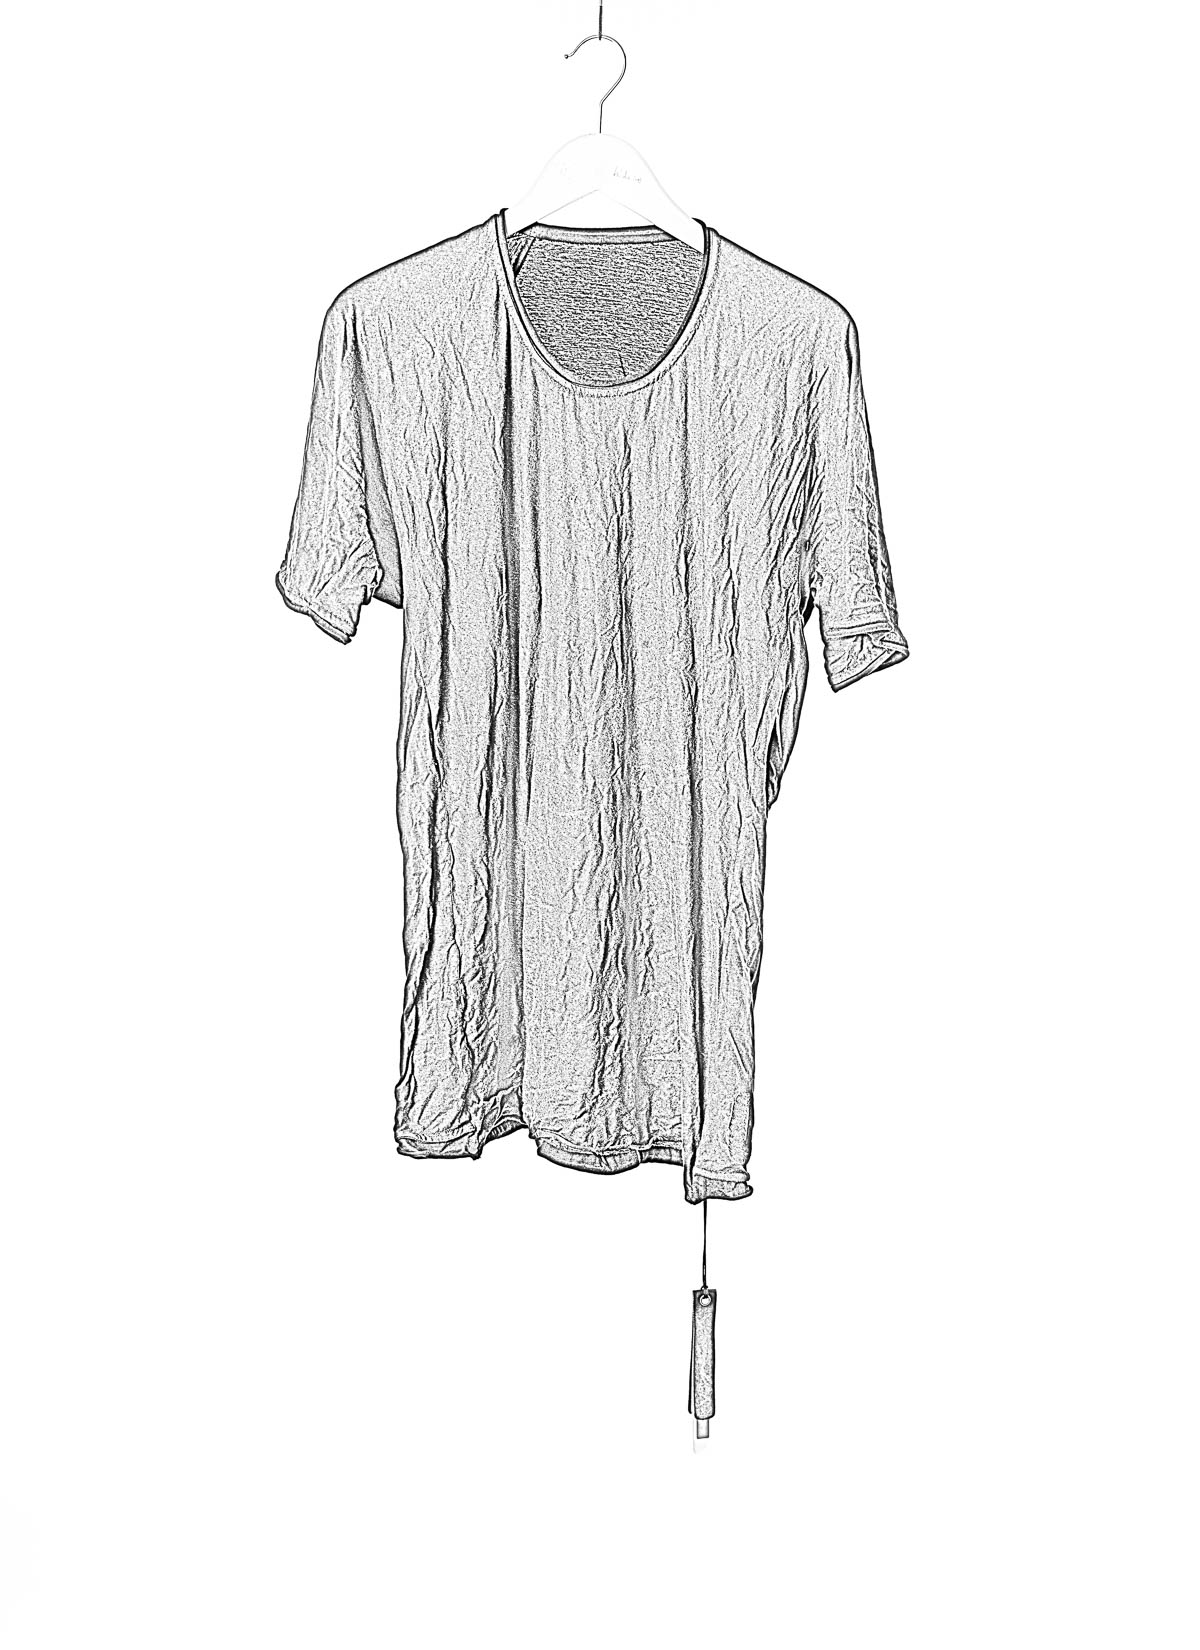 hide-m | LAYER-0 Men Classic T-Shirt 75, black cotton